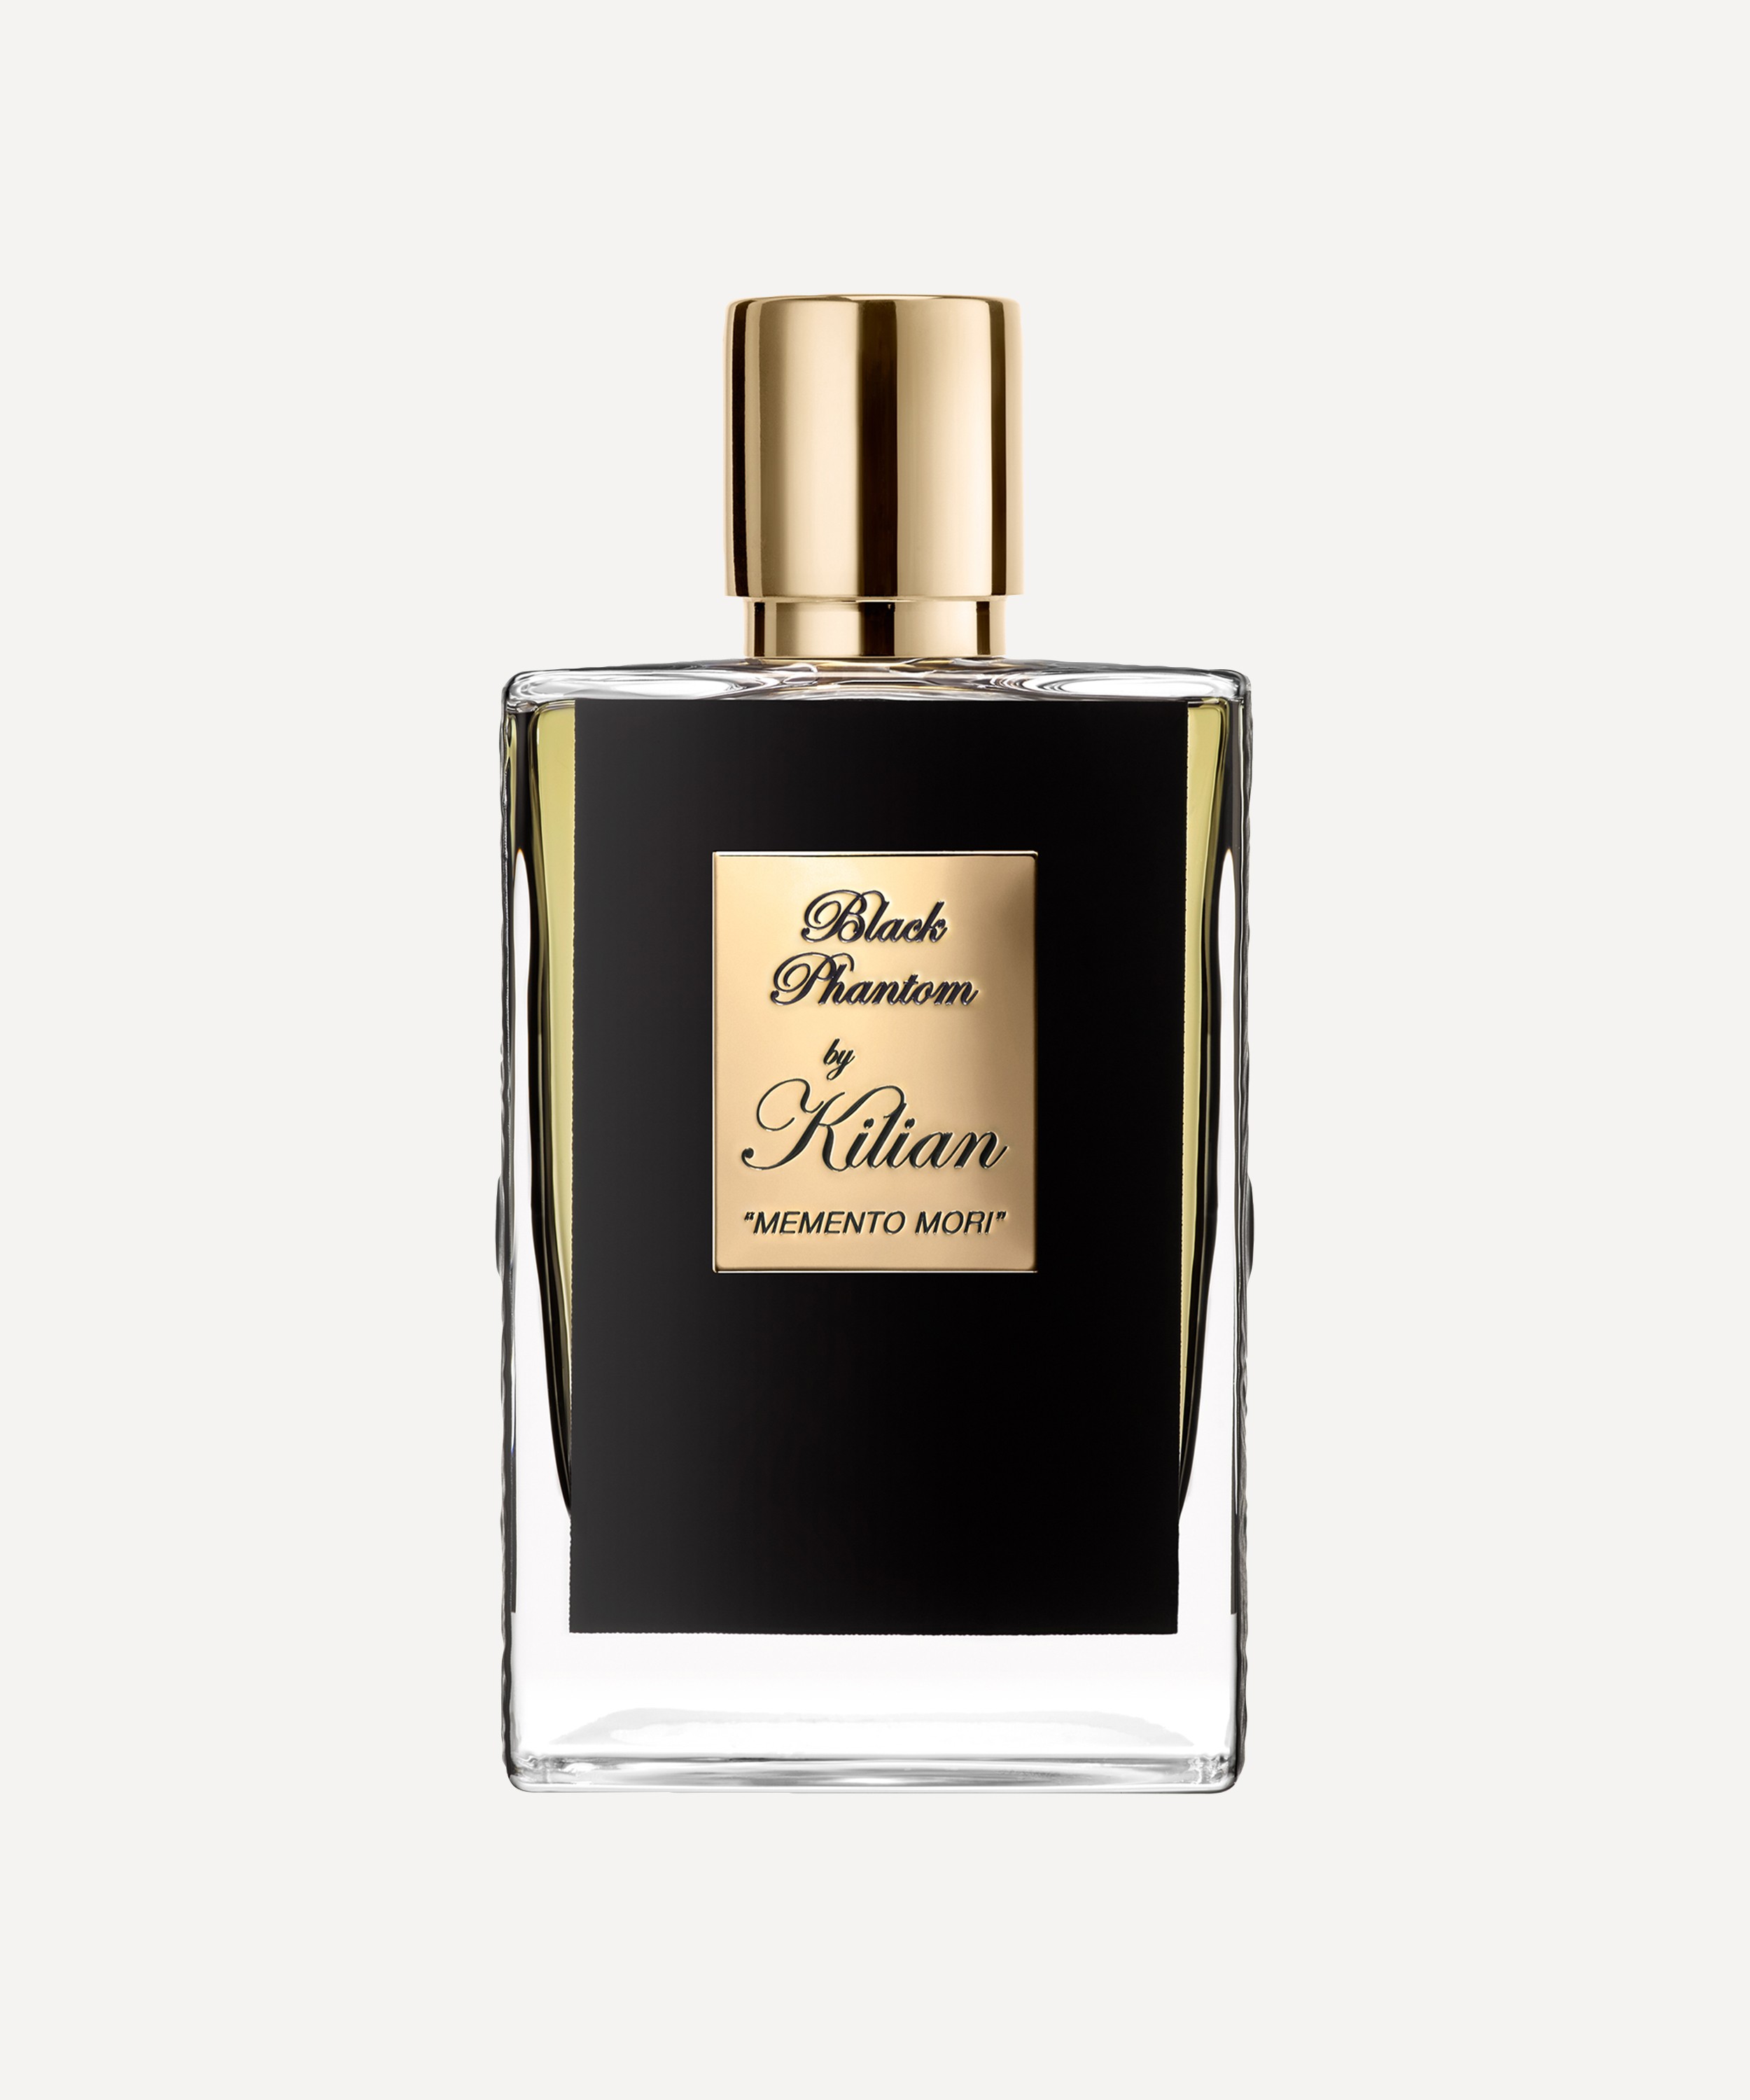 KILIAN PARIS - Black Phantom Refillable Eau de Parfum 50ml